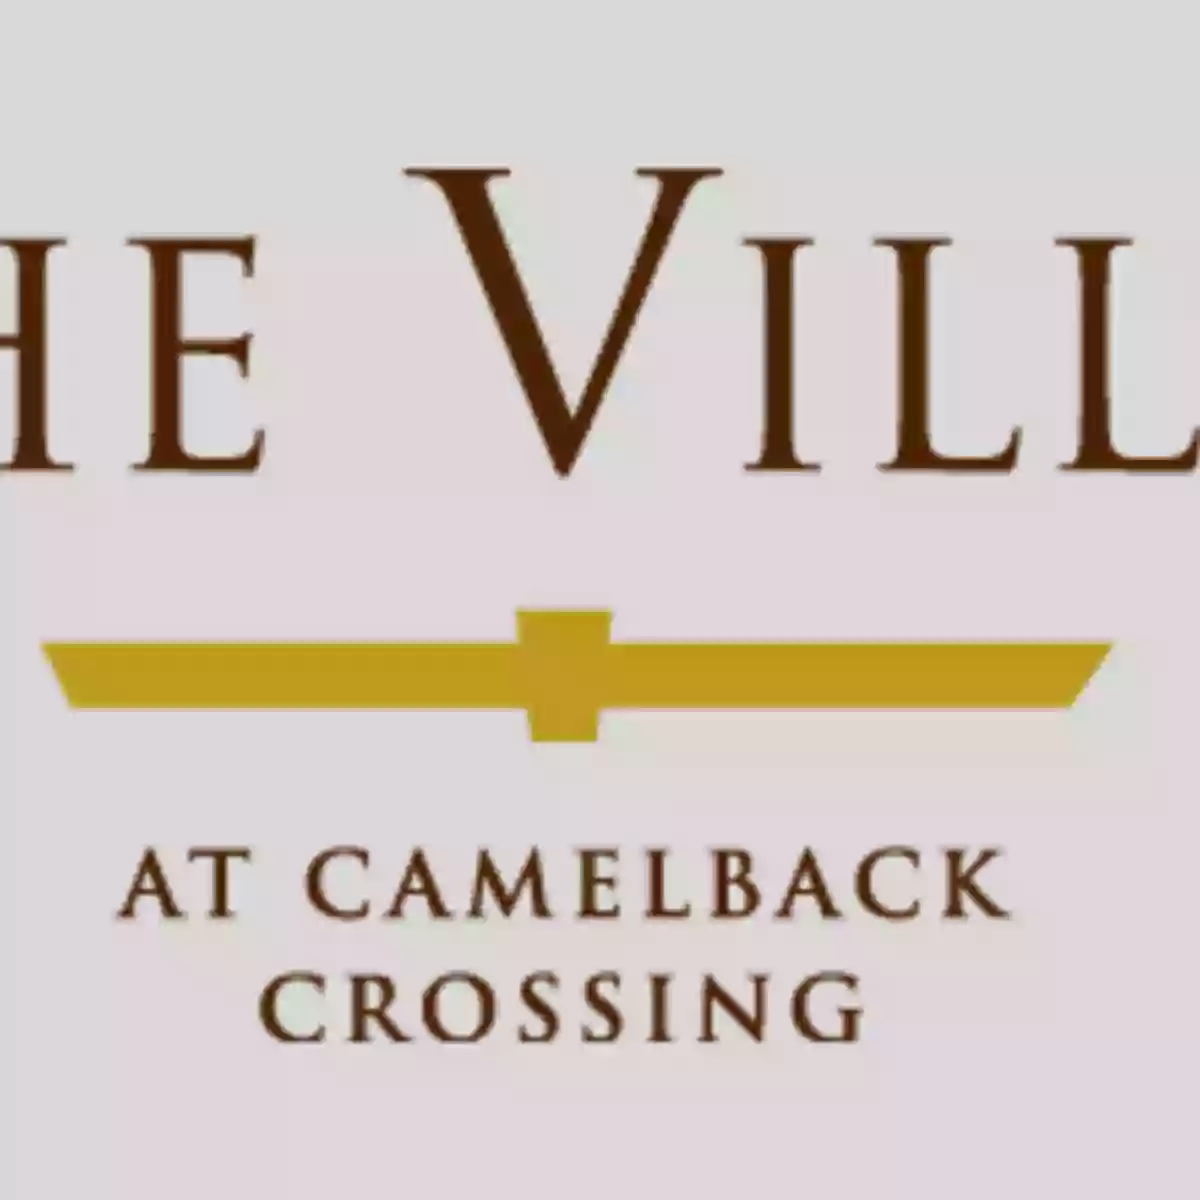 The Villas at Camelback Crossing